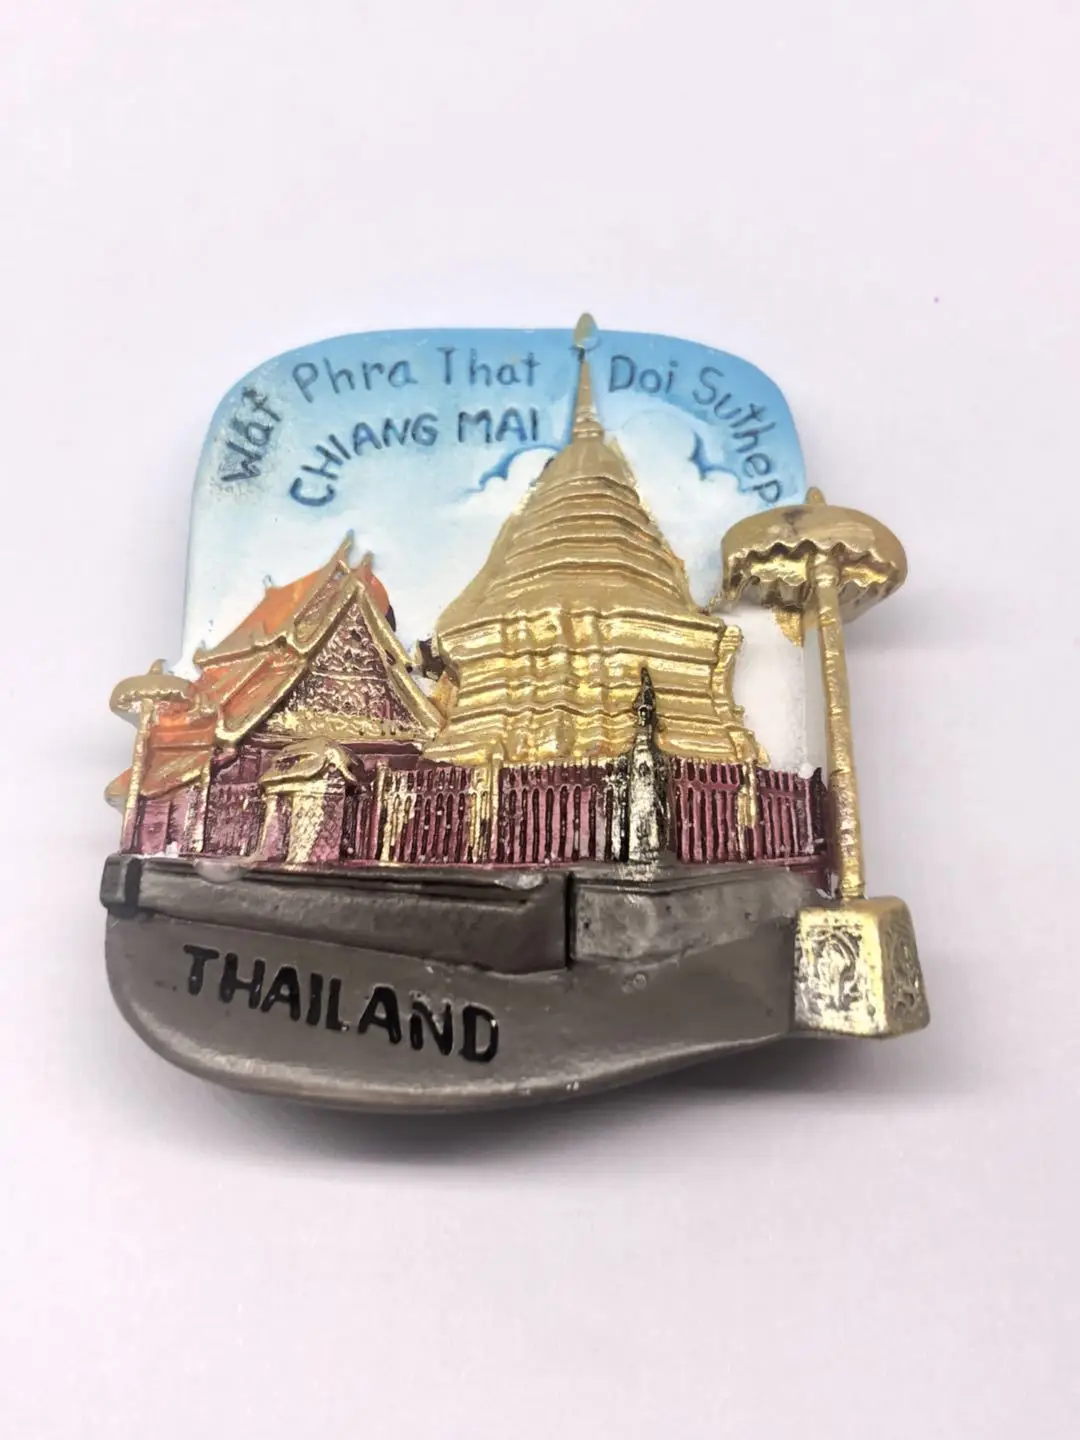 Imanes para Refrigerador Nevera Fridge Magnet Sticker Frigerator Imán Viaje Souvenir Tailandia Golden Buddha Elephant Bandera Nacional